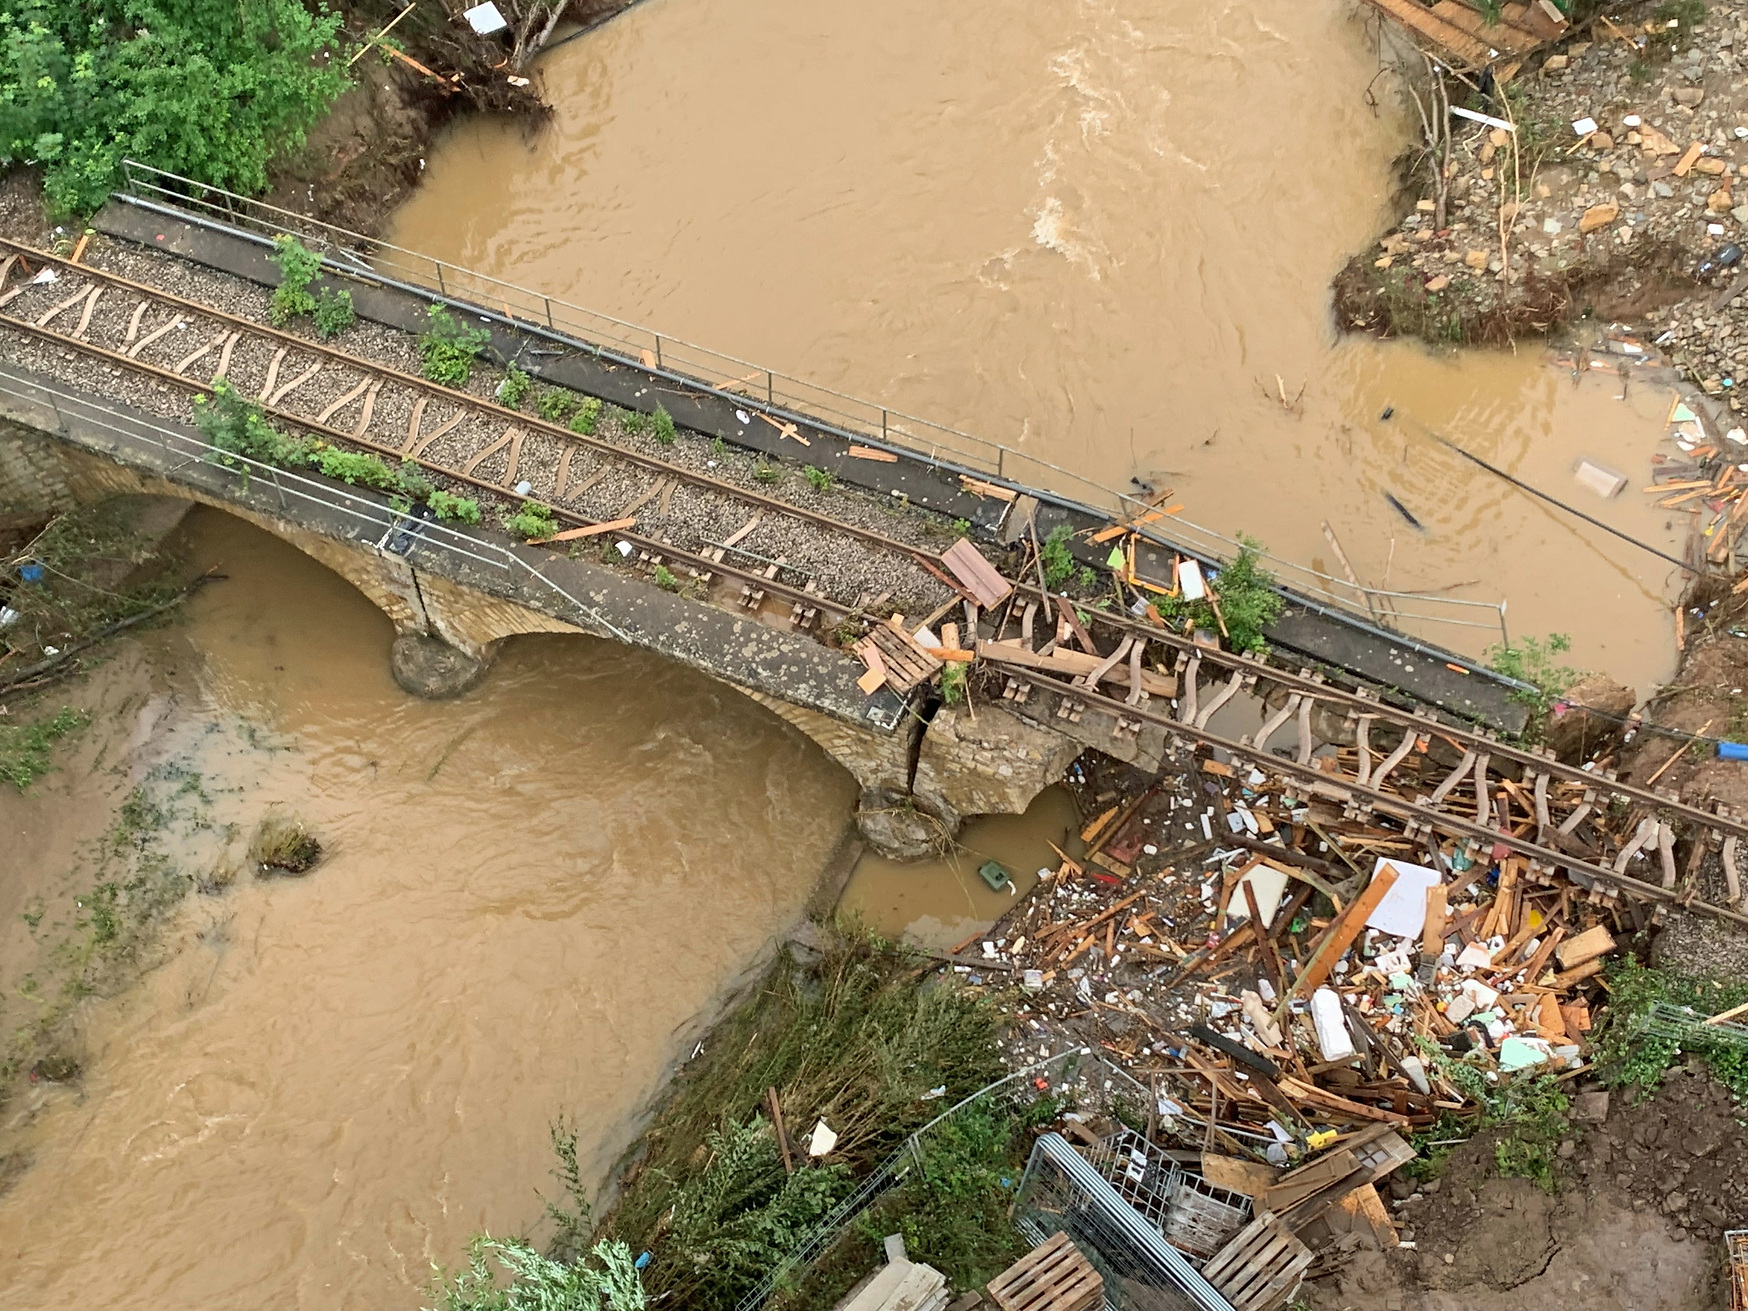 Wir sehen eine von der Flut vollständig zerstörte Eisenbahnbrücke.